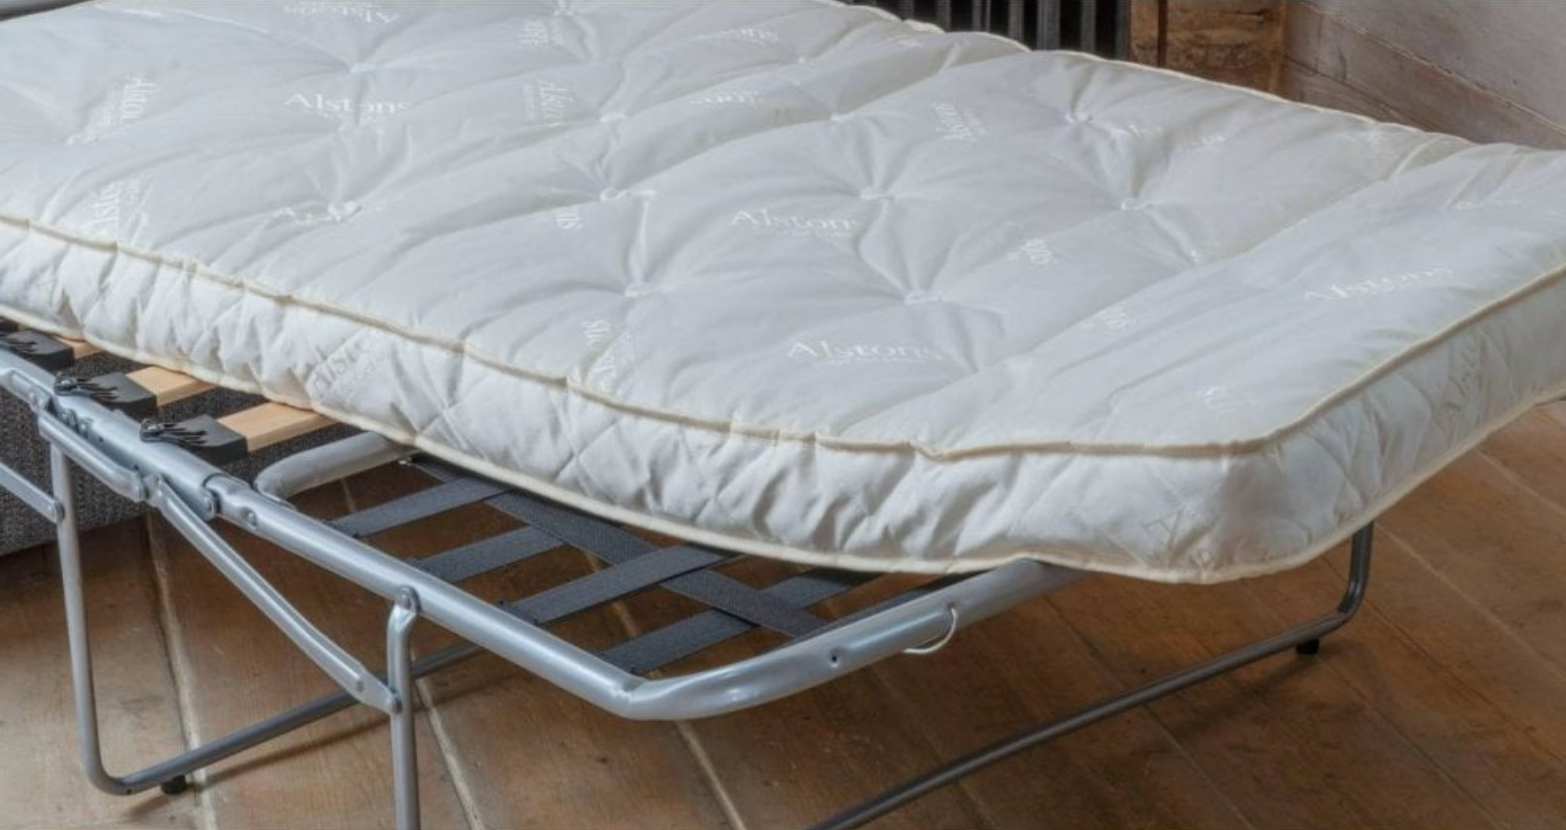 Alstons Reuben 3 Seater Sofa Bed Grey Fabric 10 Year guarantee